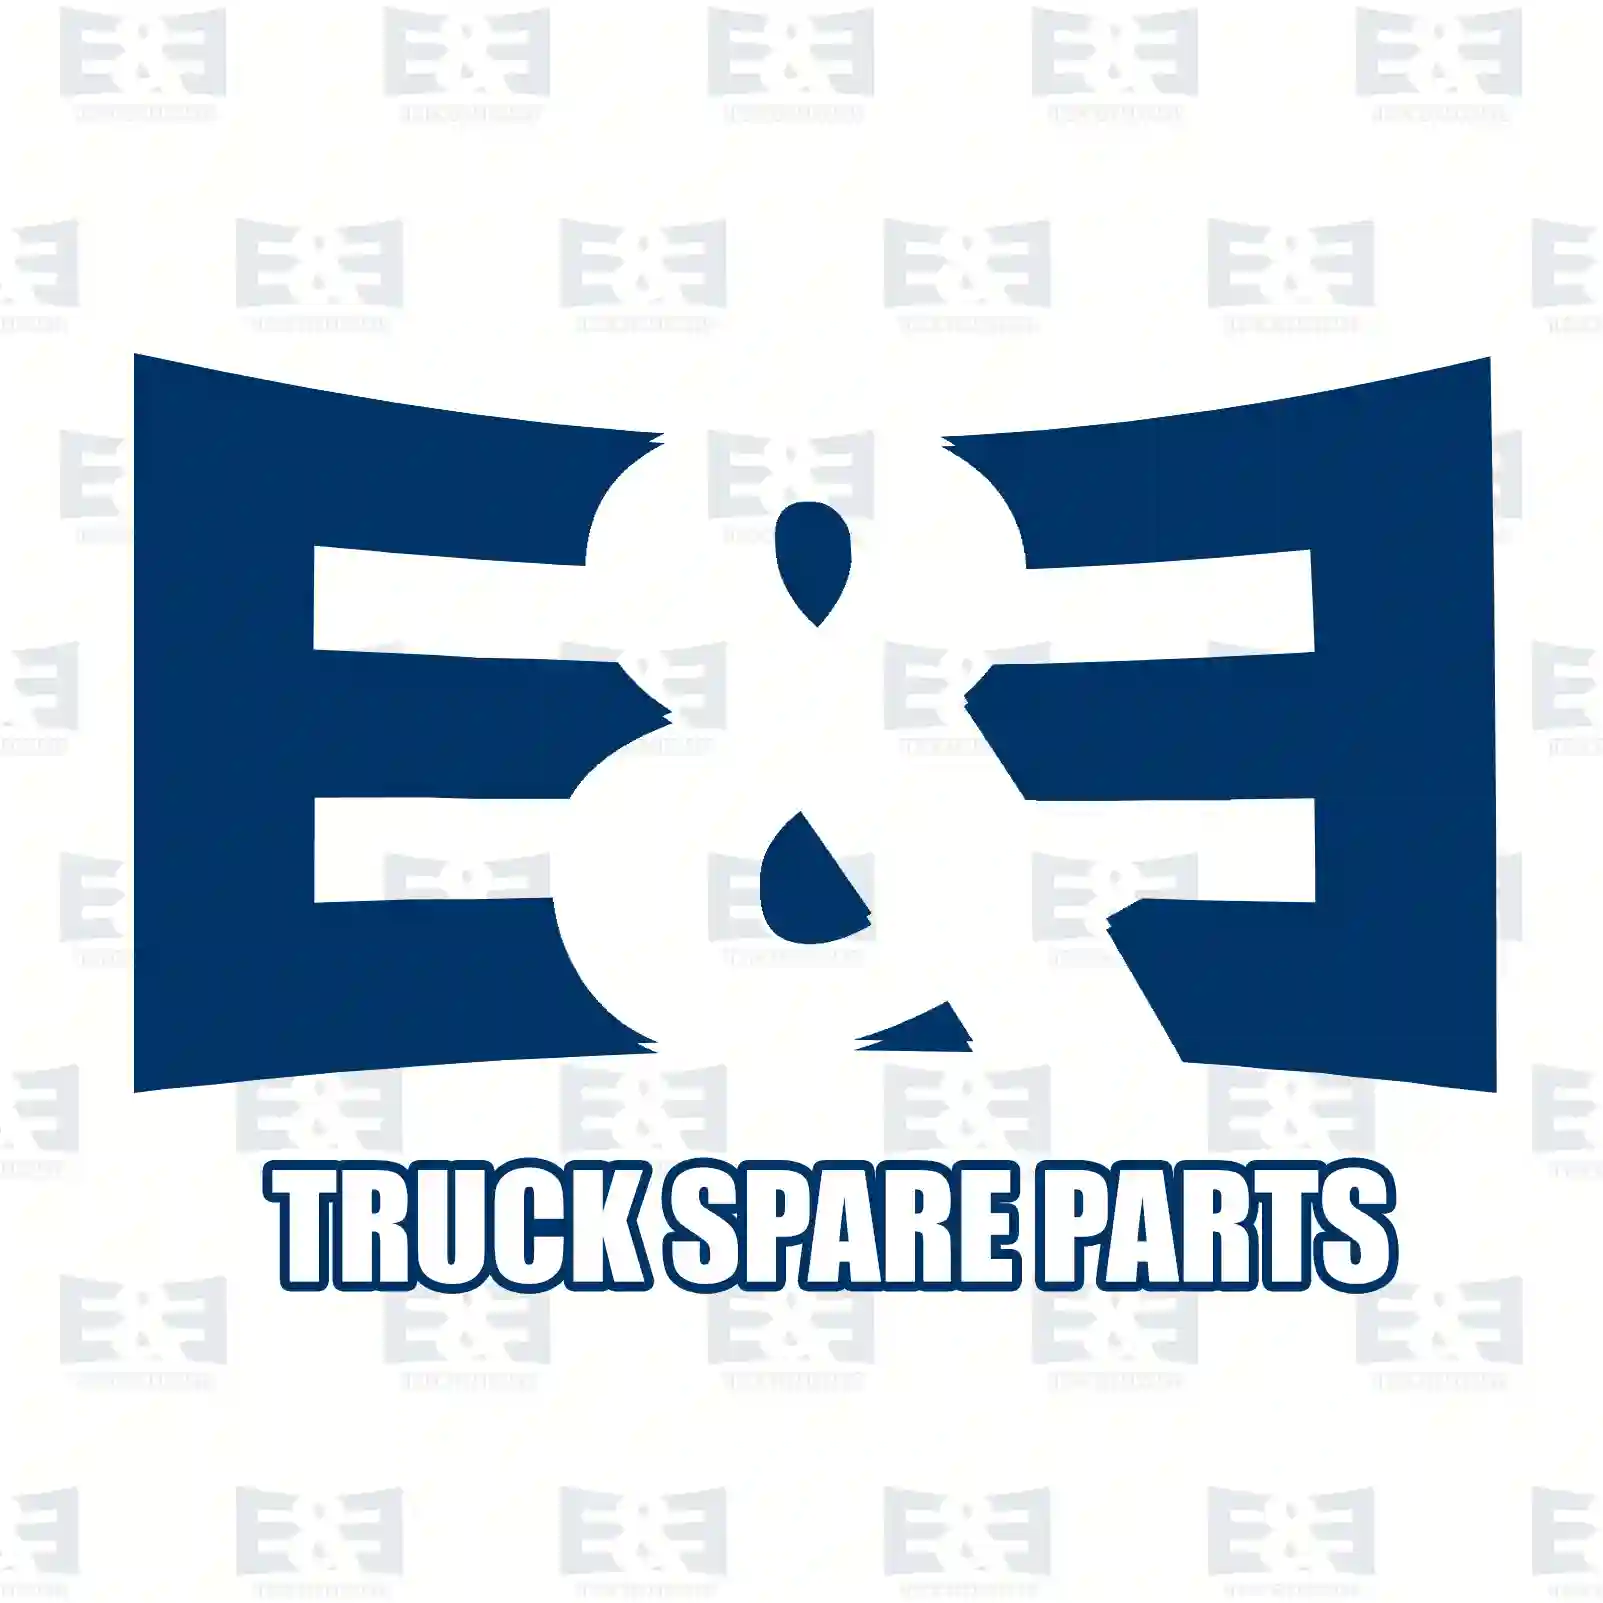 Clutch kit, 2E2288972, 81303050193S1 ||  2E2288972 E&E Truck Spare Parts | Truck Spare Parts, Auotomotive Spare Parts Clutch kit, 2E2288972, 81303050193S1 ||  2E2288972 E&E Truck Spare Parts | Truck Spare Parts, Auotomotive Spare Parts